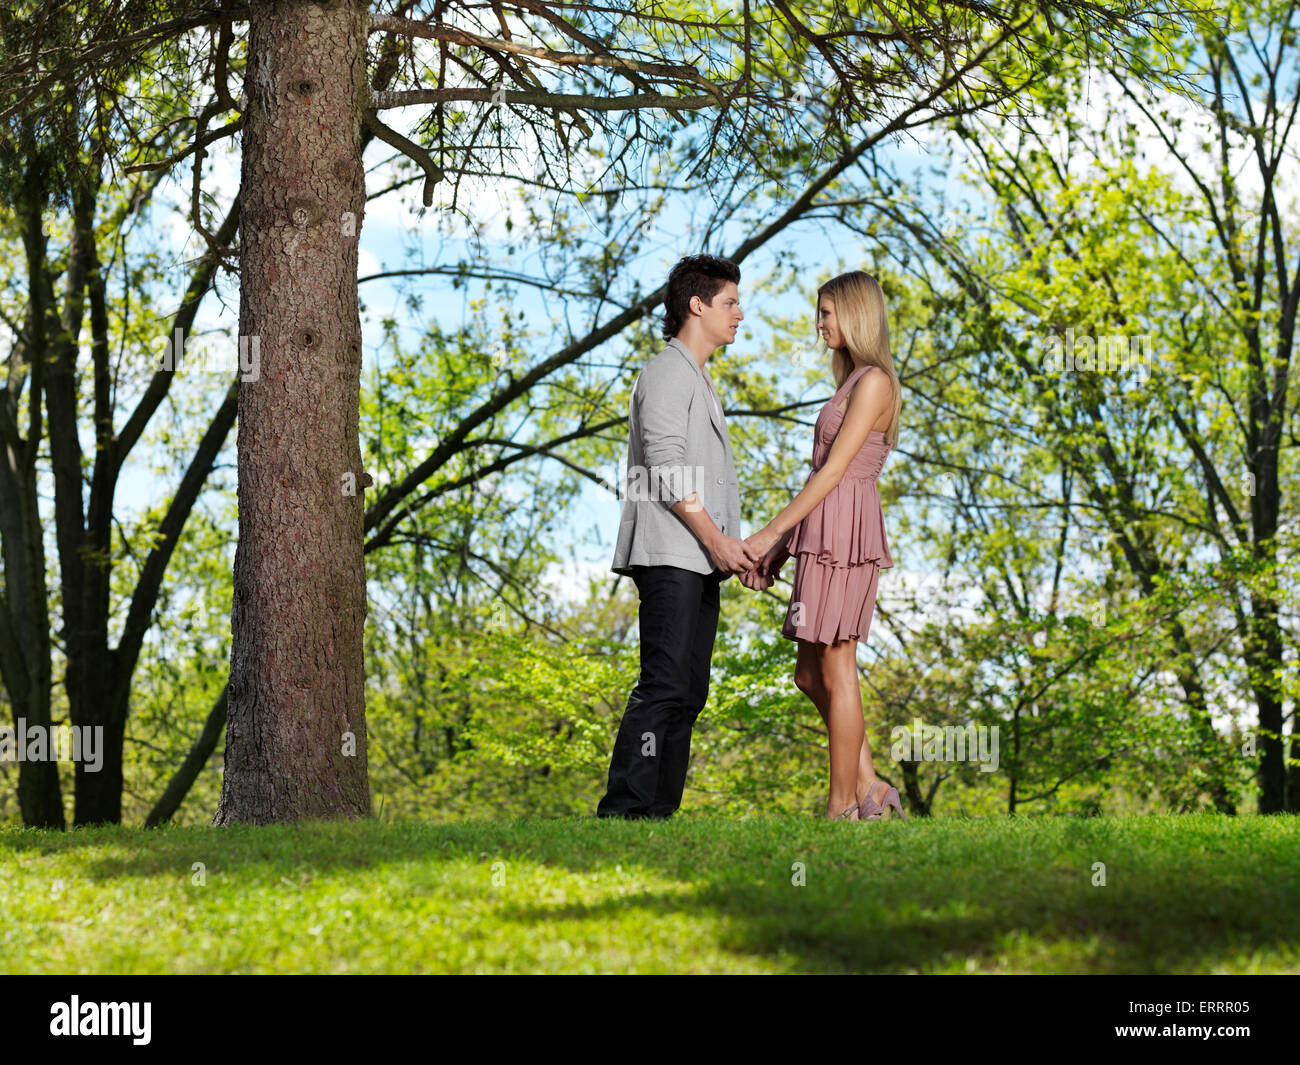 Licenza disponibile all'indirizzo MaximImages.com - coppia giovane e romantica che si tiene per mano in un parco Foto Stock